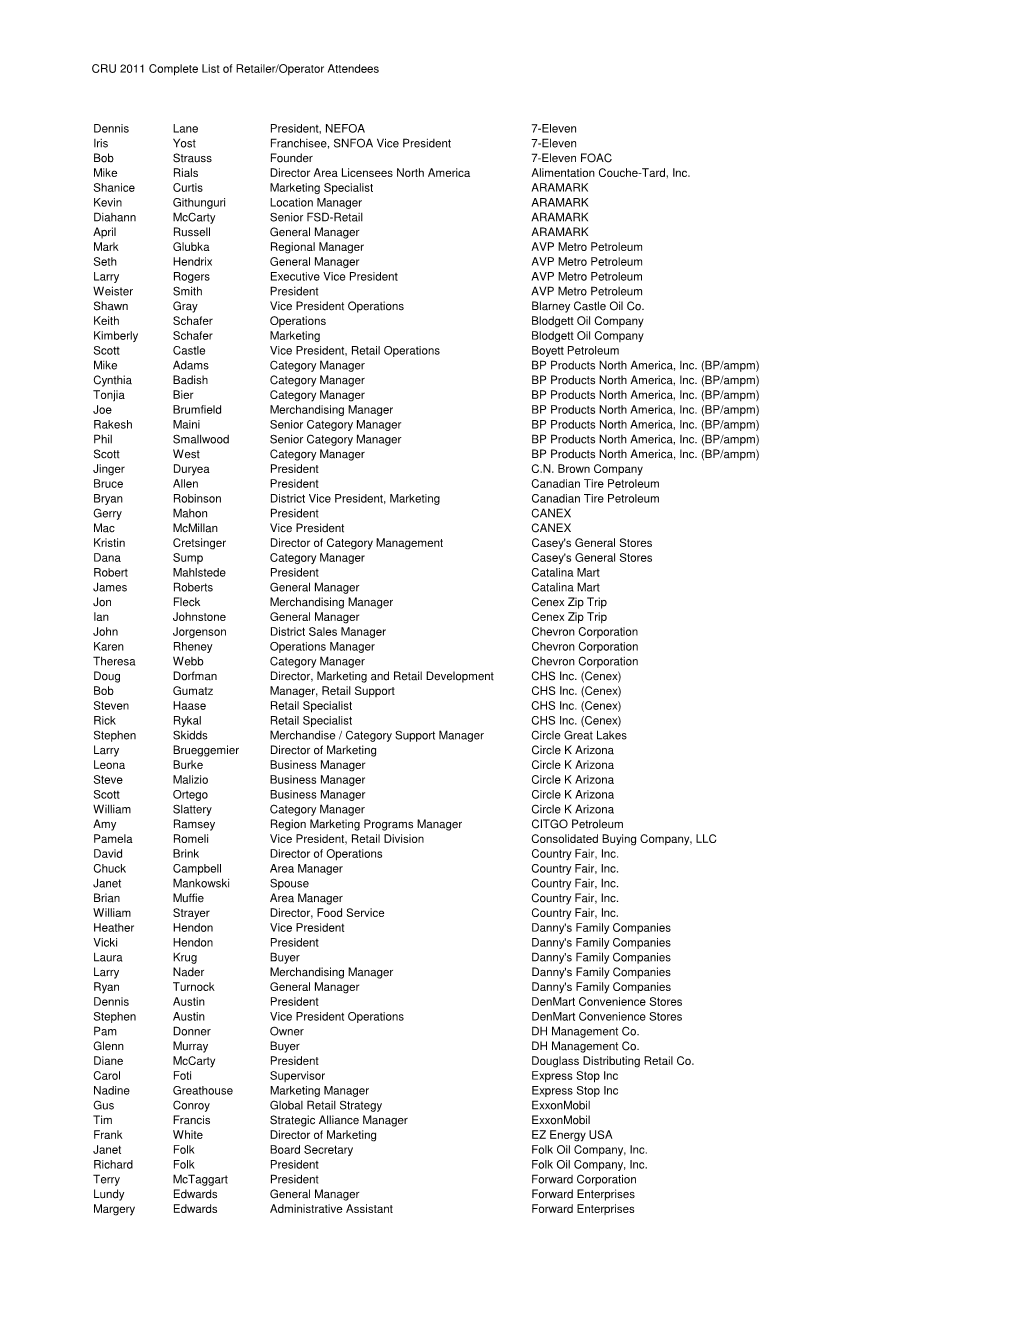 Complete List of 2011 CRU Retailer Operators